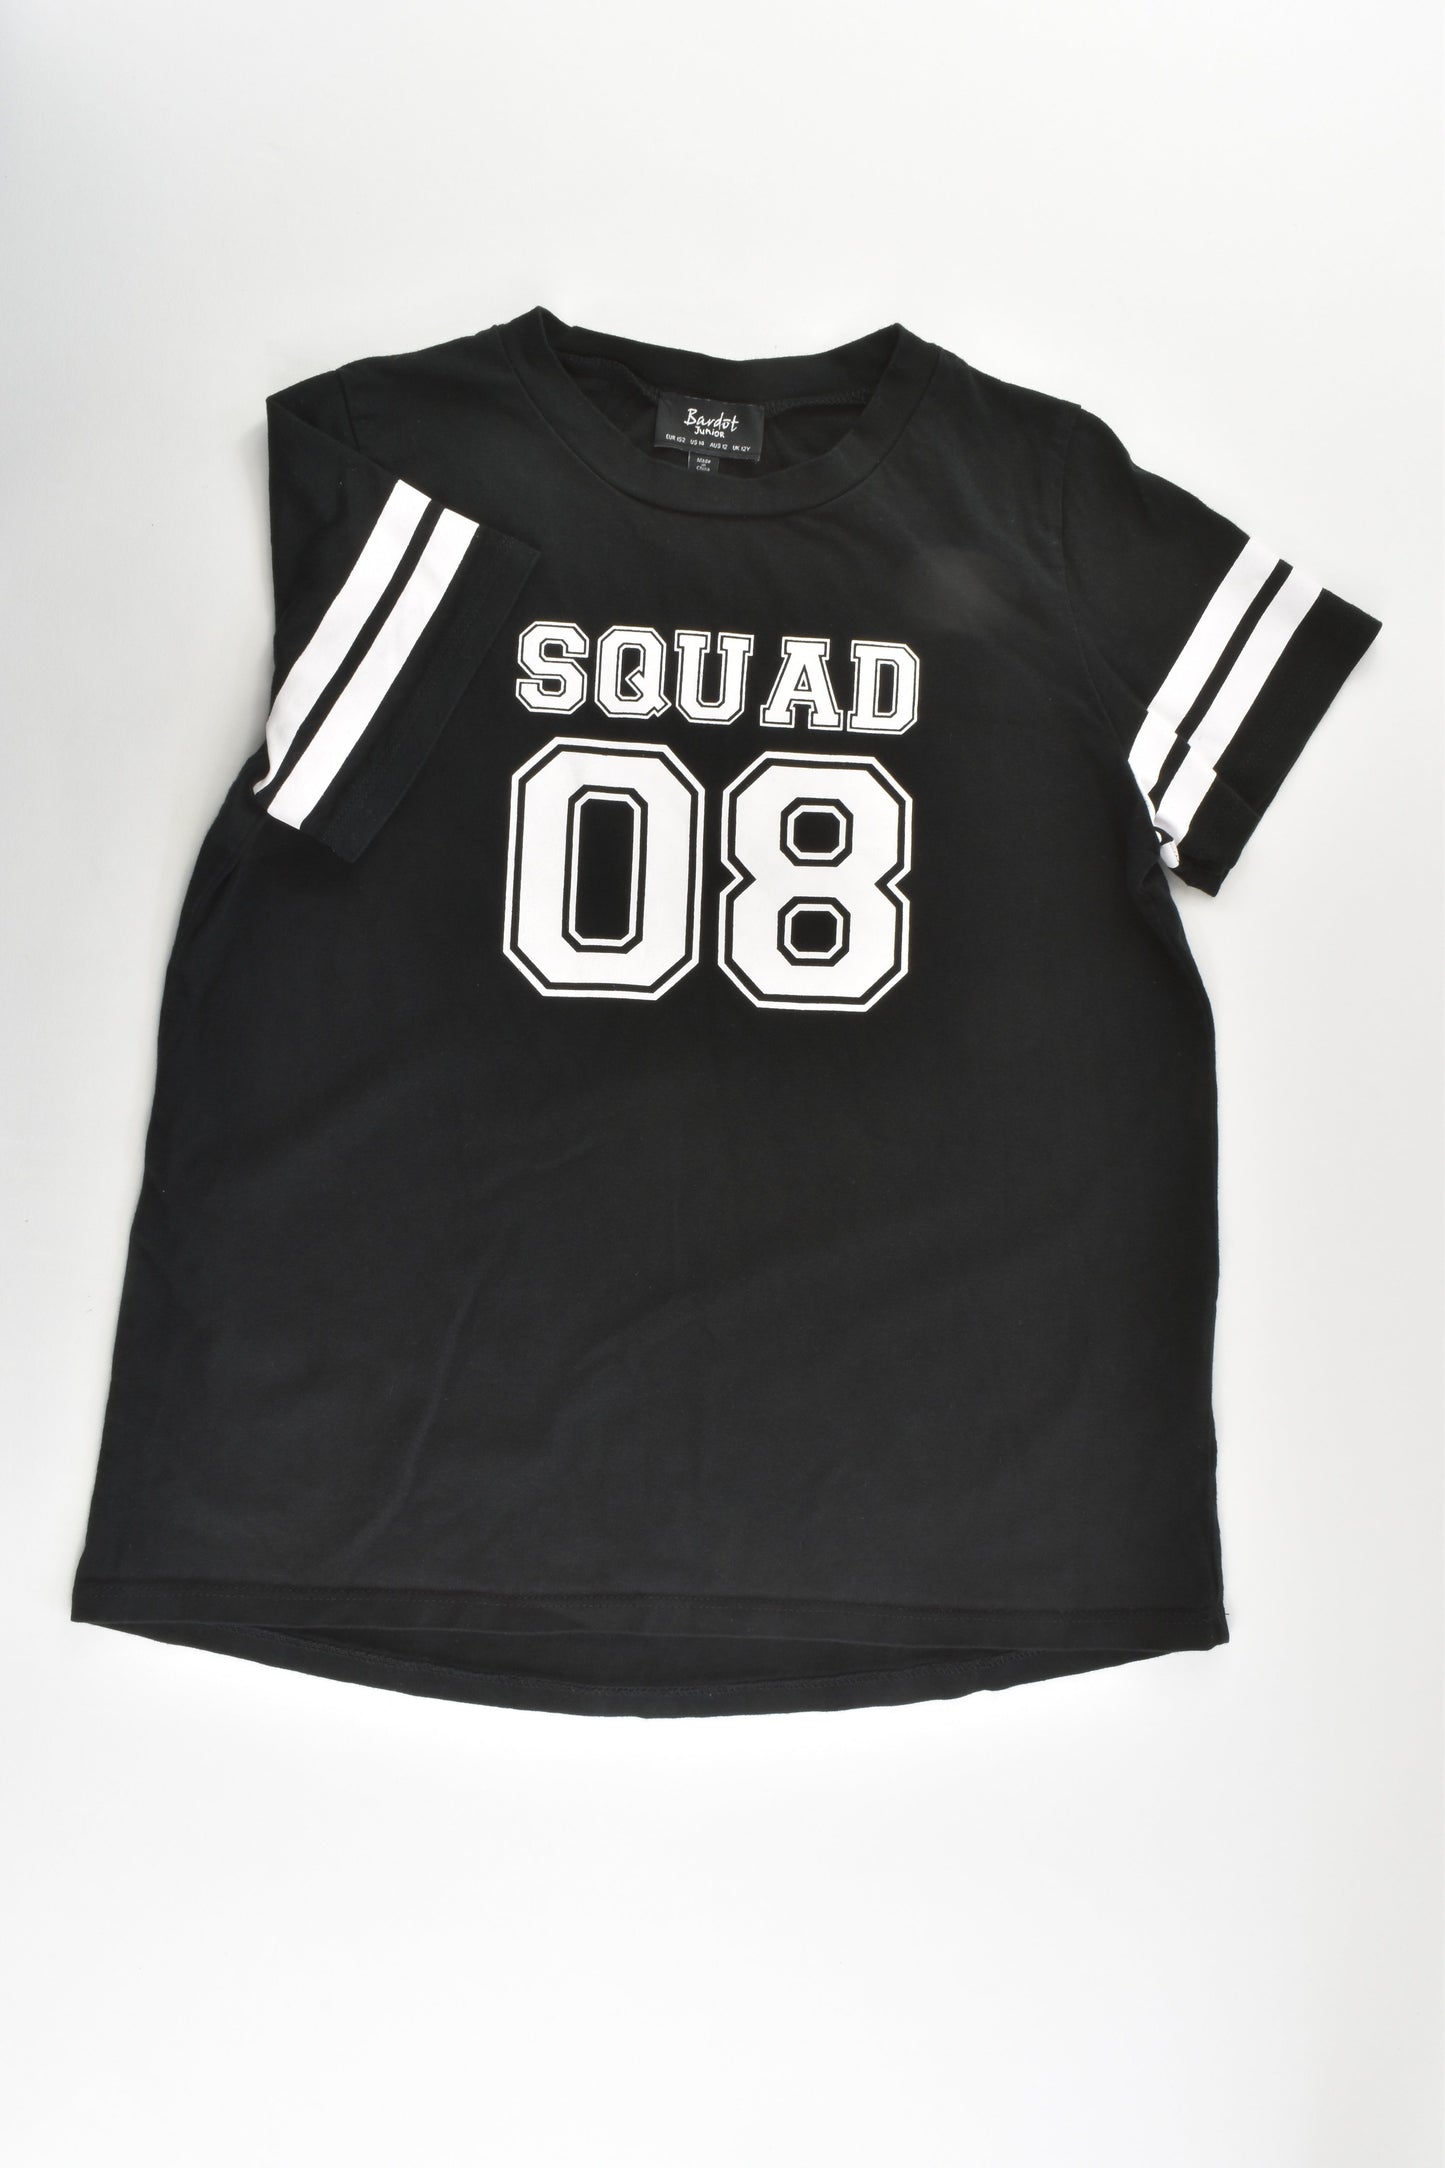 Bardot Junior Size 12 'Squad 08' T-shirt